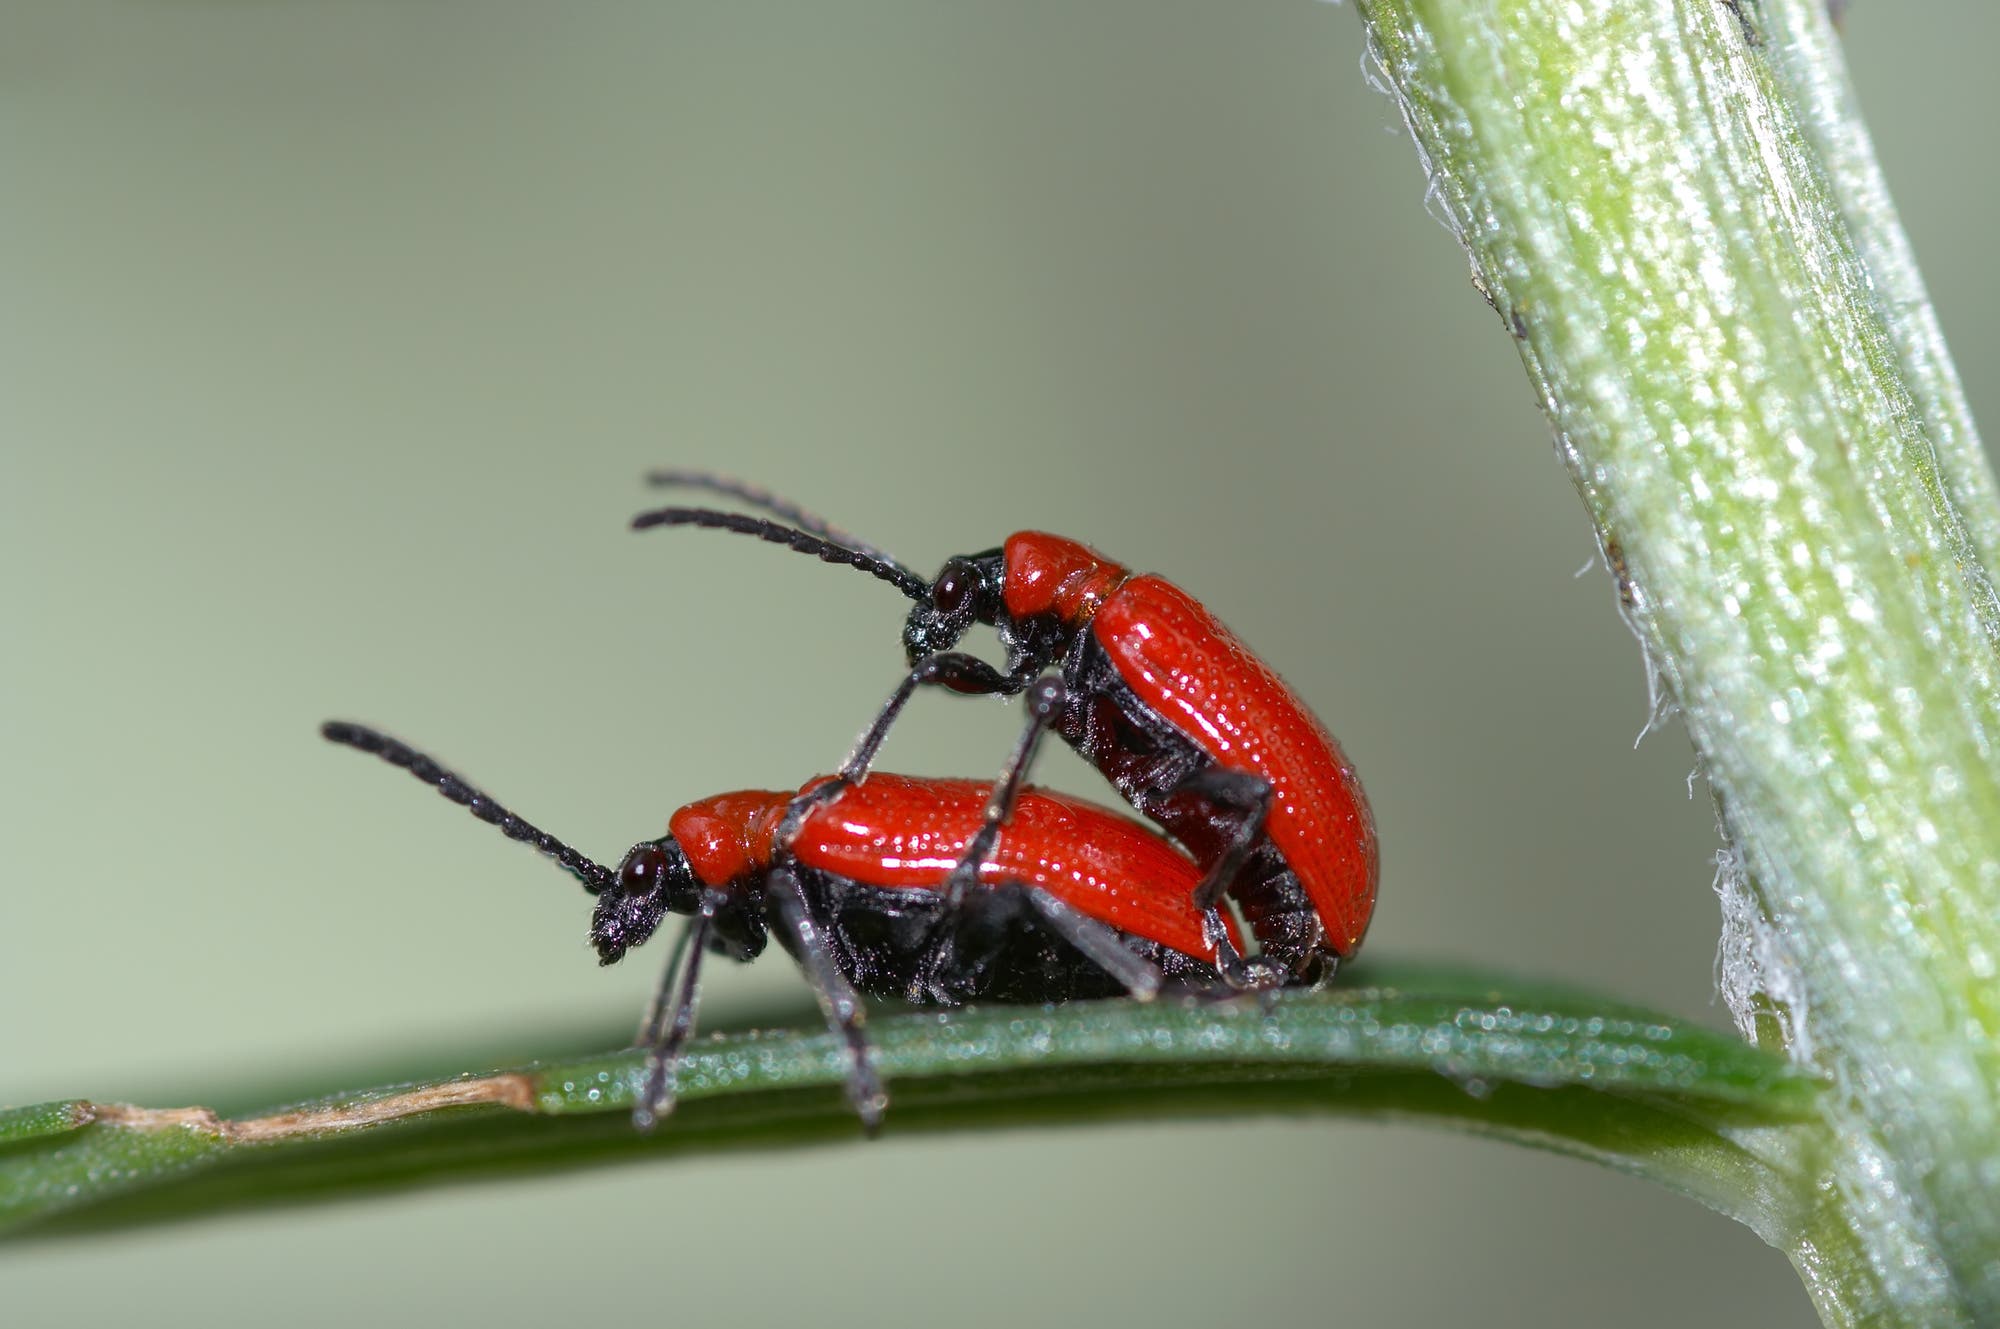 Zwei Käfer im Akt der Fortpflanzung